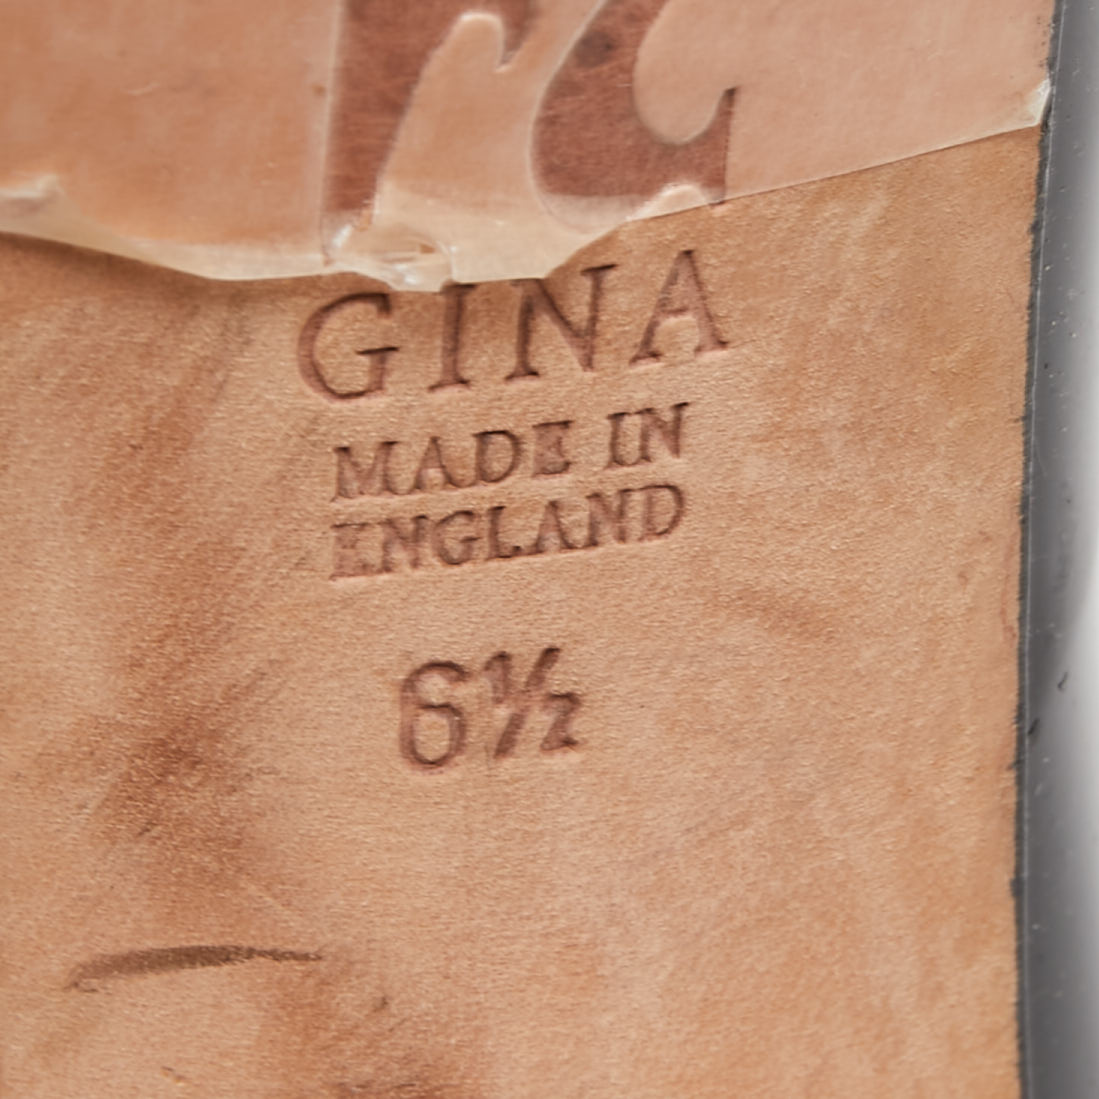 Gina Black Patent Leather Crystal Embellished Heel Peep Toe Platform Pumps Size 39.5